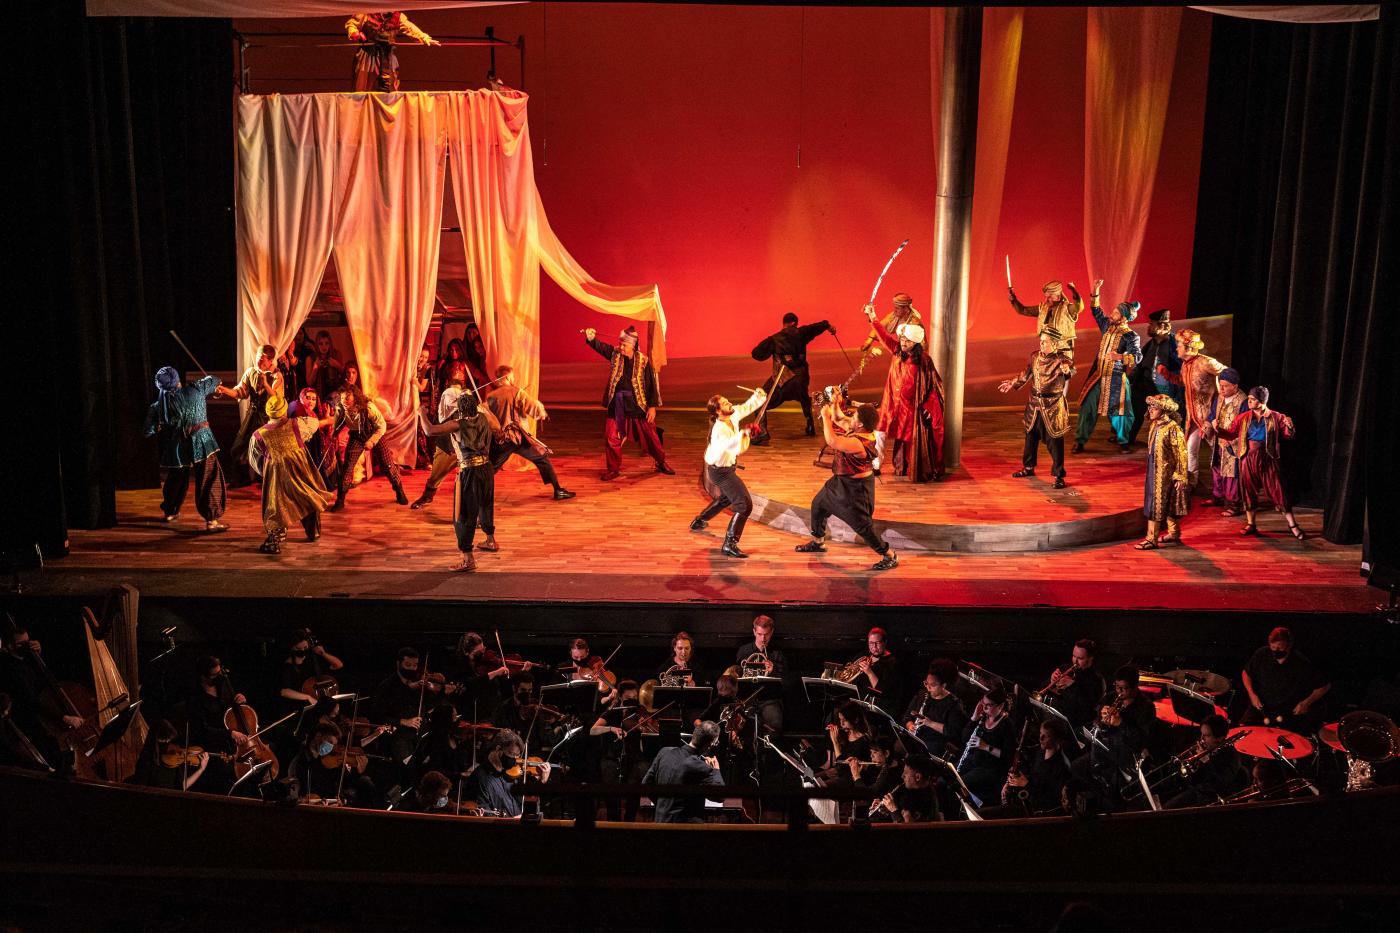 A production of Verdi's Il corsaro by the Opera Festival of Chicago